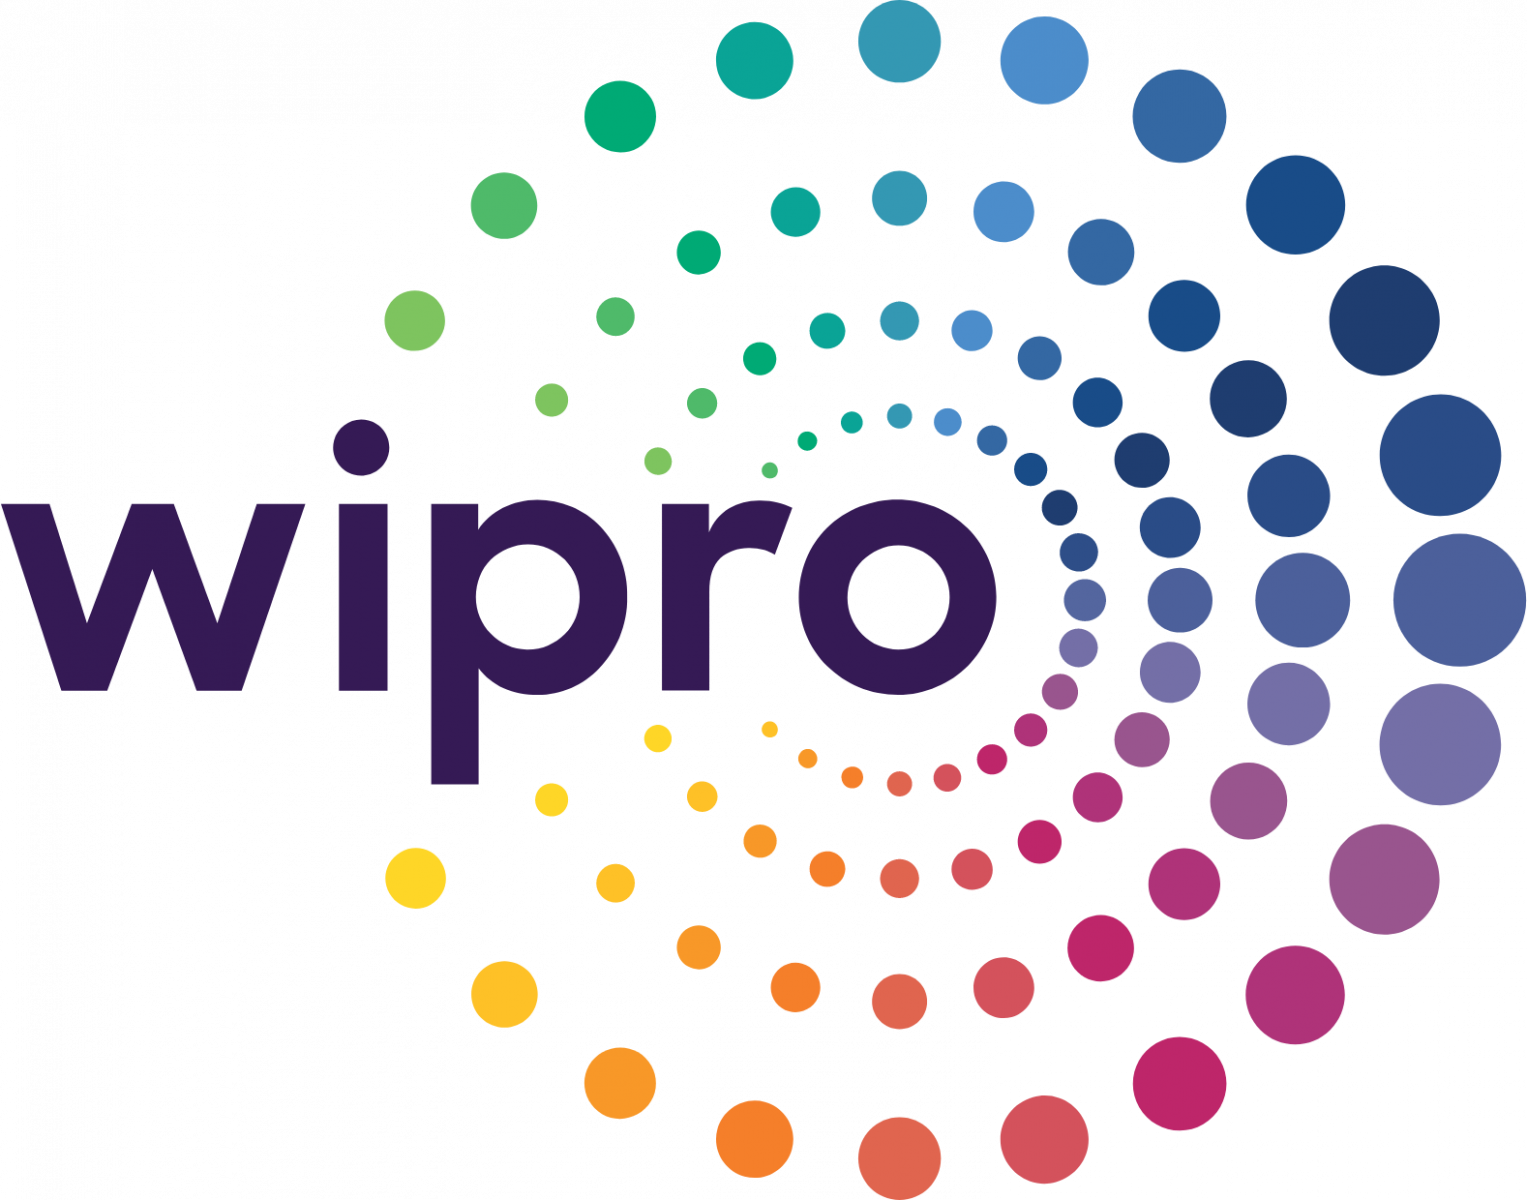 Wipro it companies in Pimpri